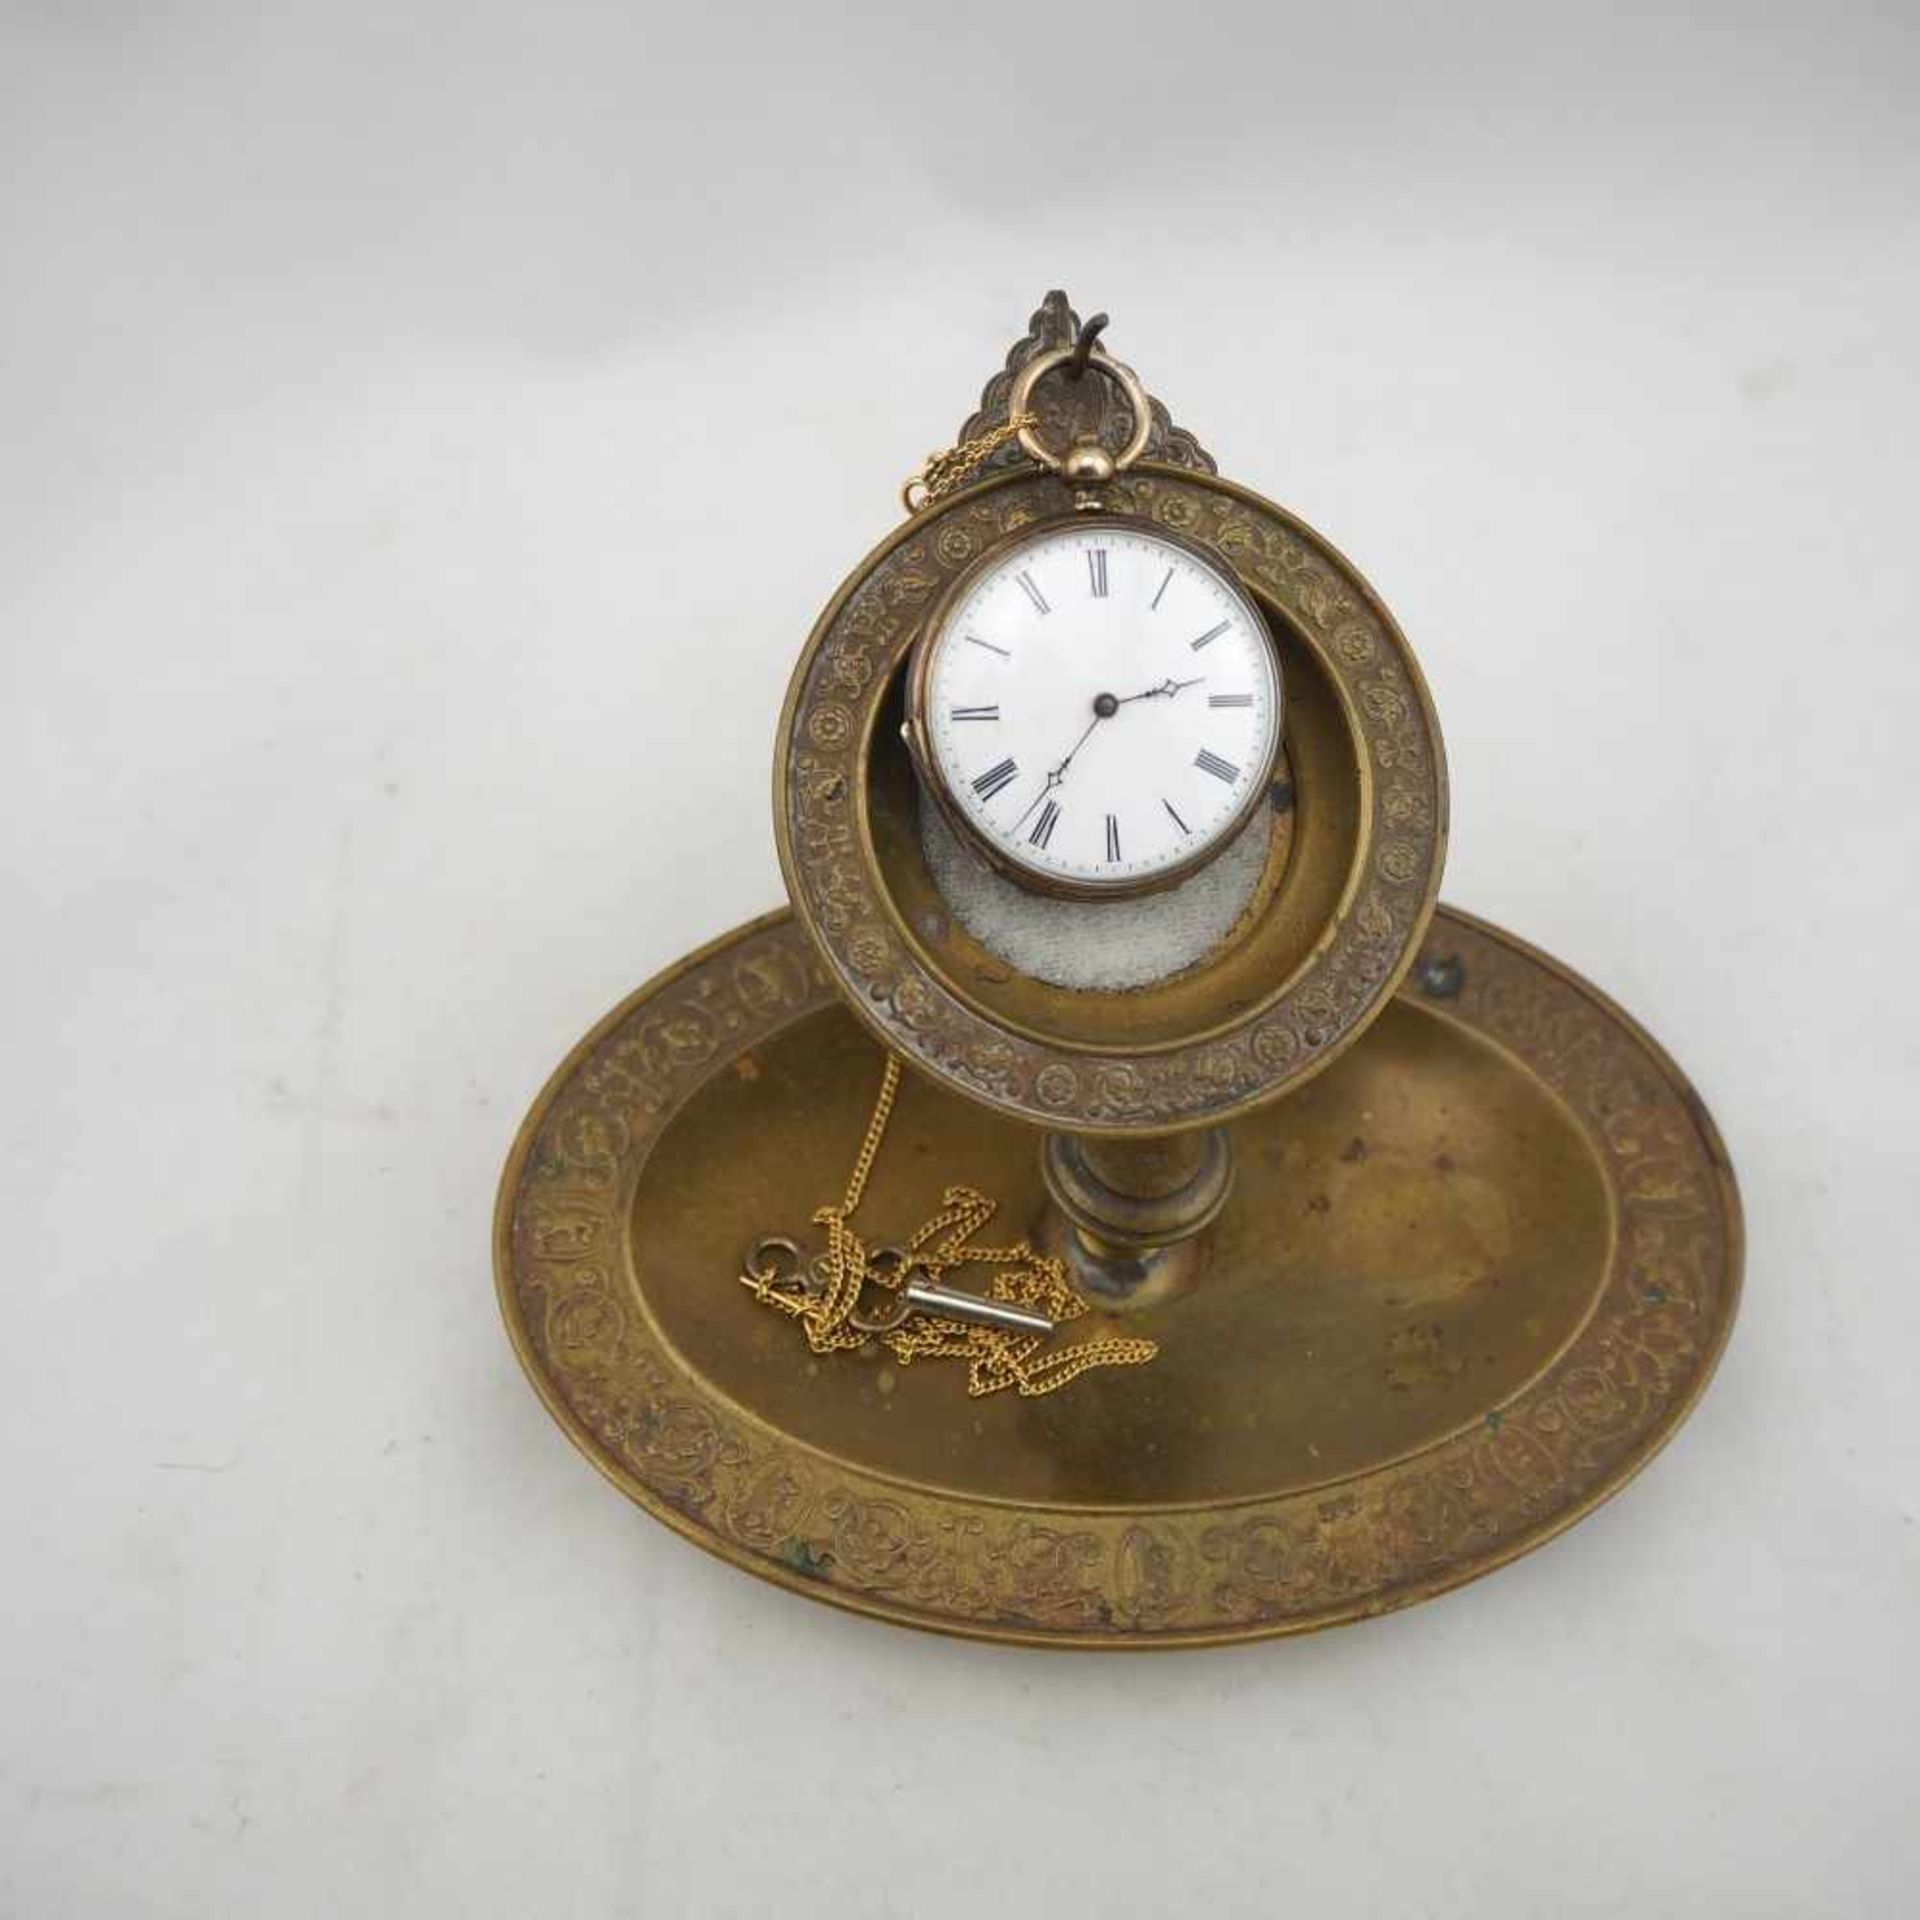 Taschenuhrständer mit UhrWohl um 1900, Uhr Älter, Uhrenständer aus Messing mit Verzierungen. Oval,